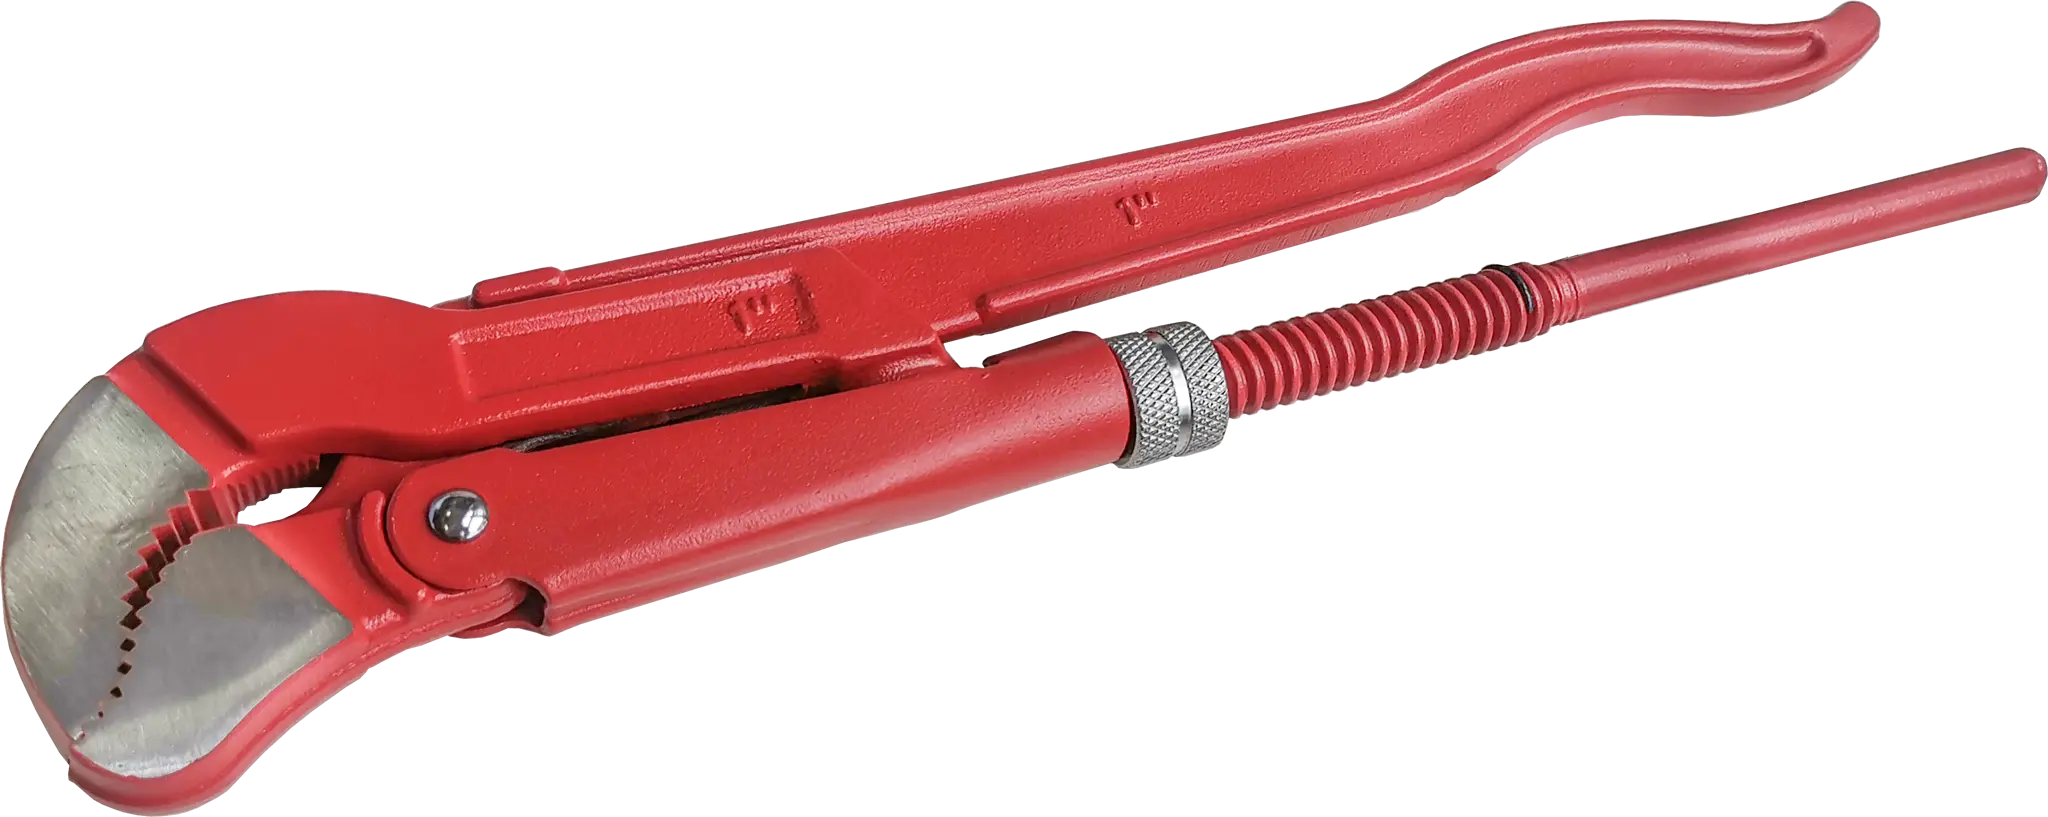 Ключ трубный газовый рычажный S 1045.0254 захват 25 мм, длина 320 мм ключ трубный рычажный низ